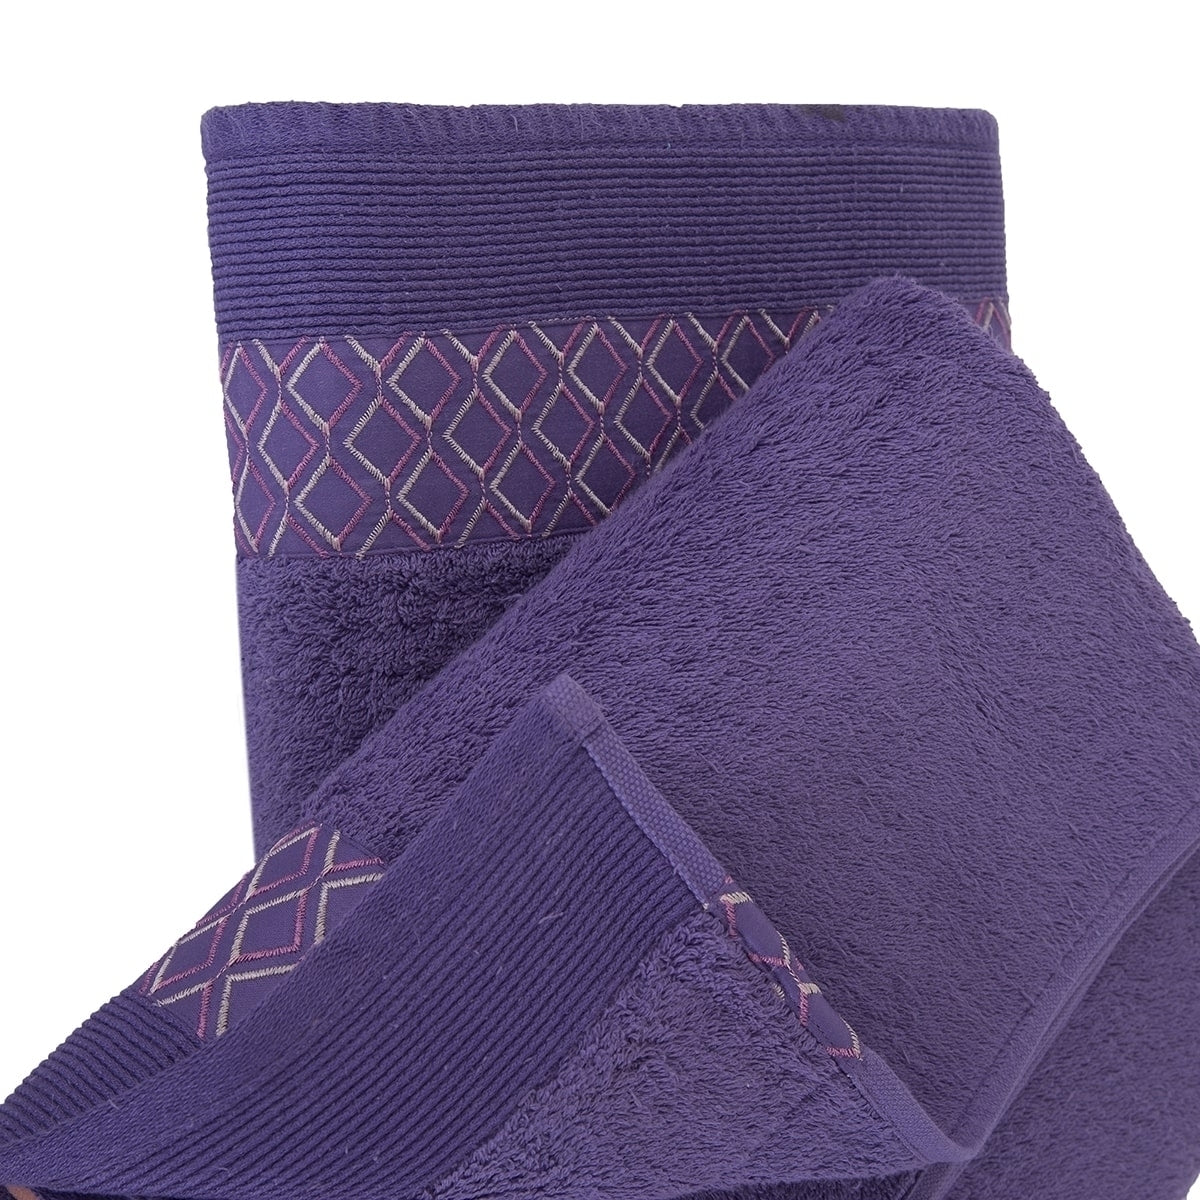 Co-Exist Zest Antimicrobial Antifungal Super Absorbent & Soft Purple Towel Set